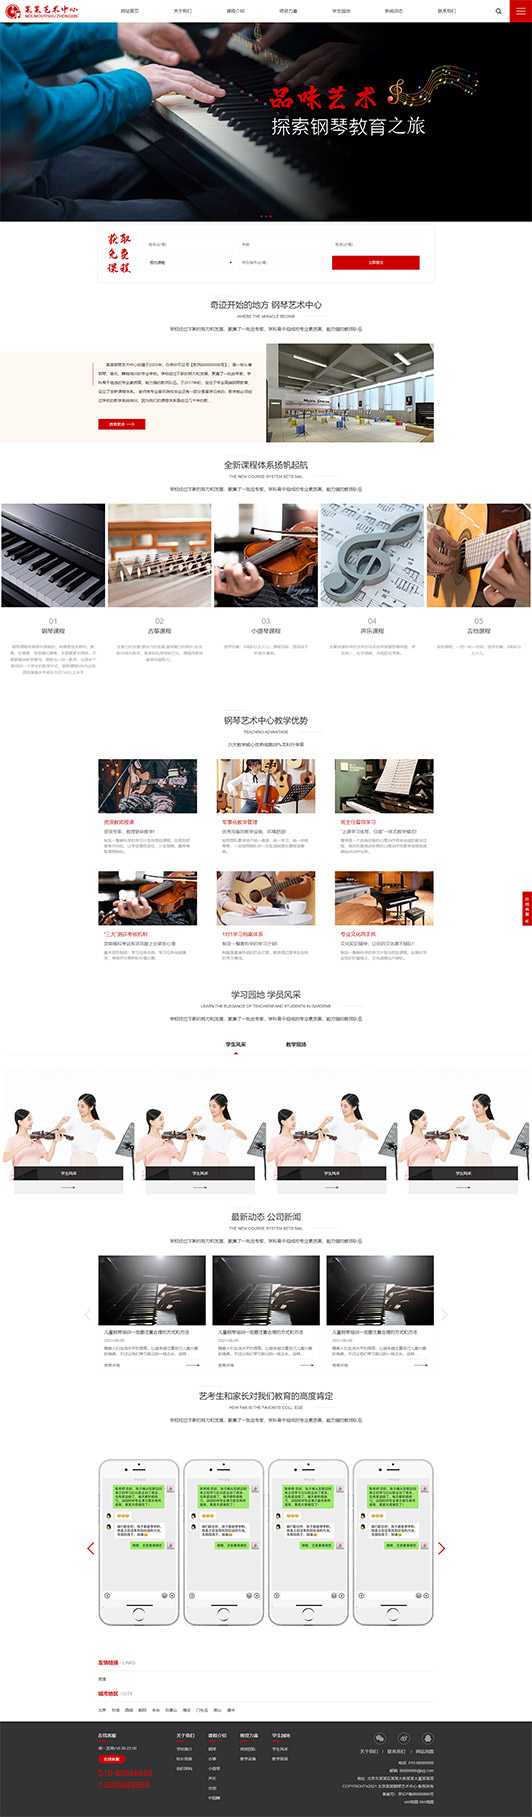 金华钢琴艺术培训公司响应式企业网站